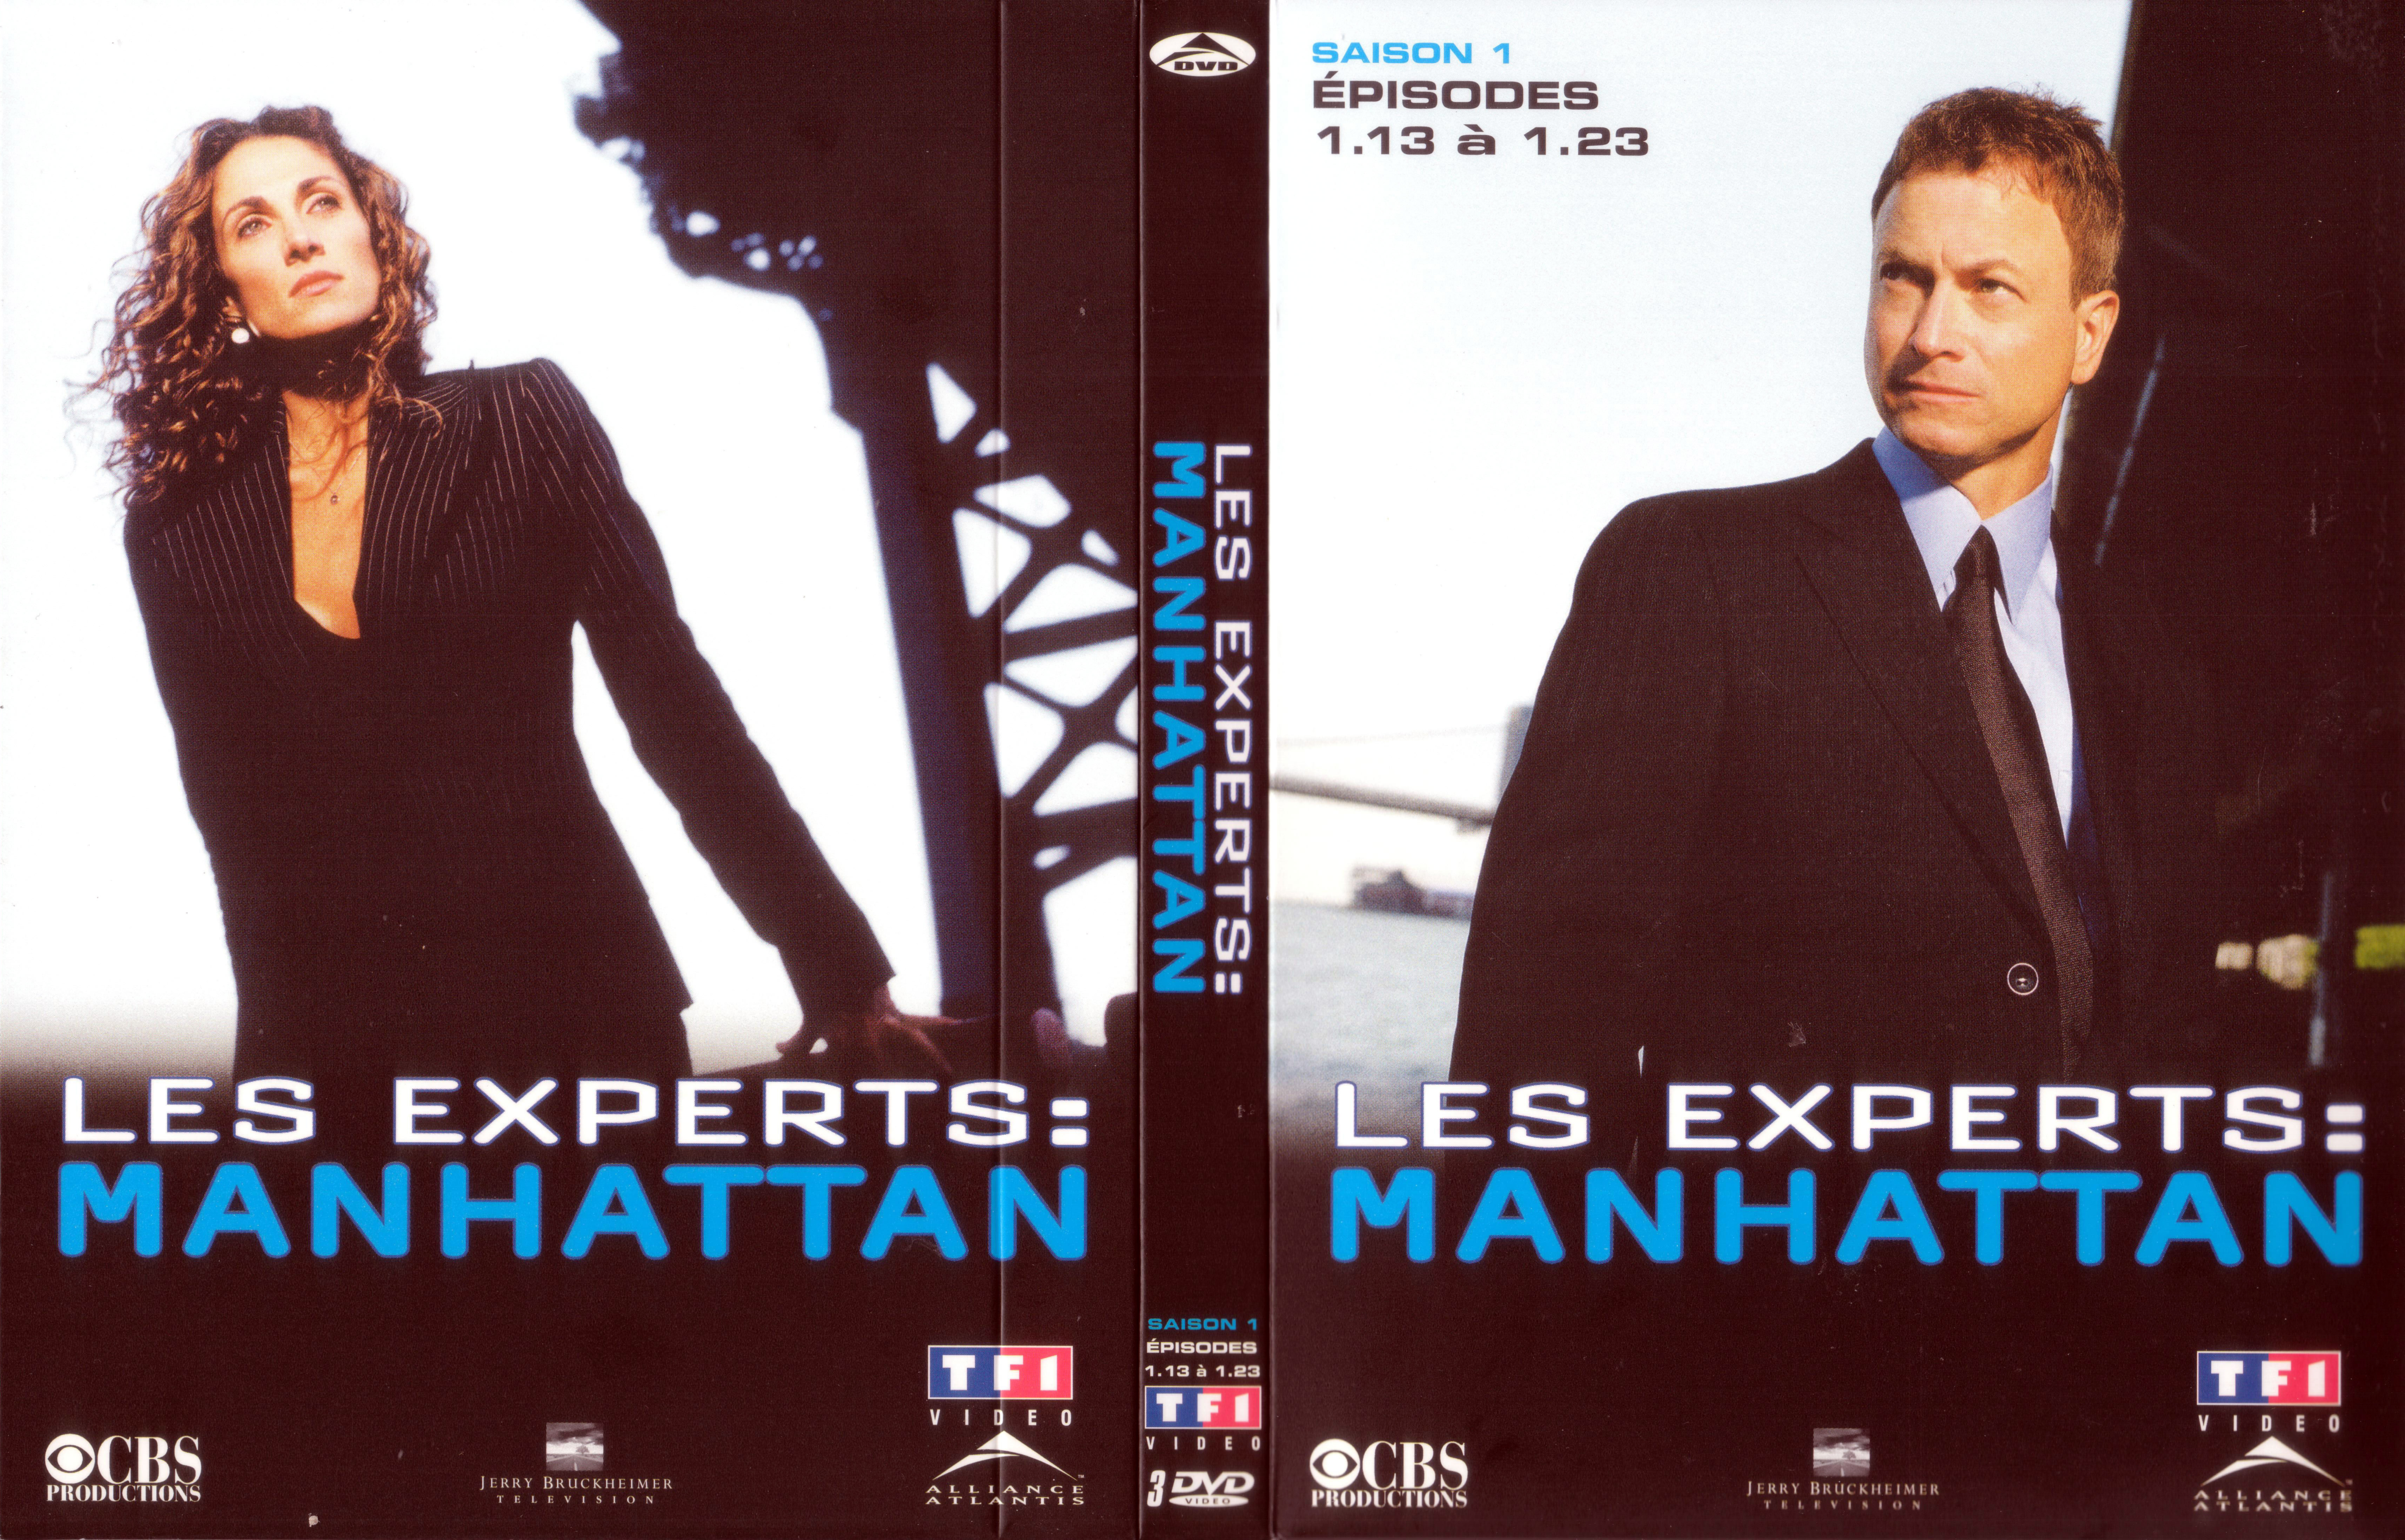 Jaquette DVD Les experts manhattan Saison 1 vol 2